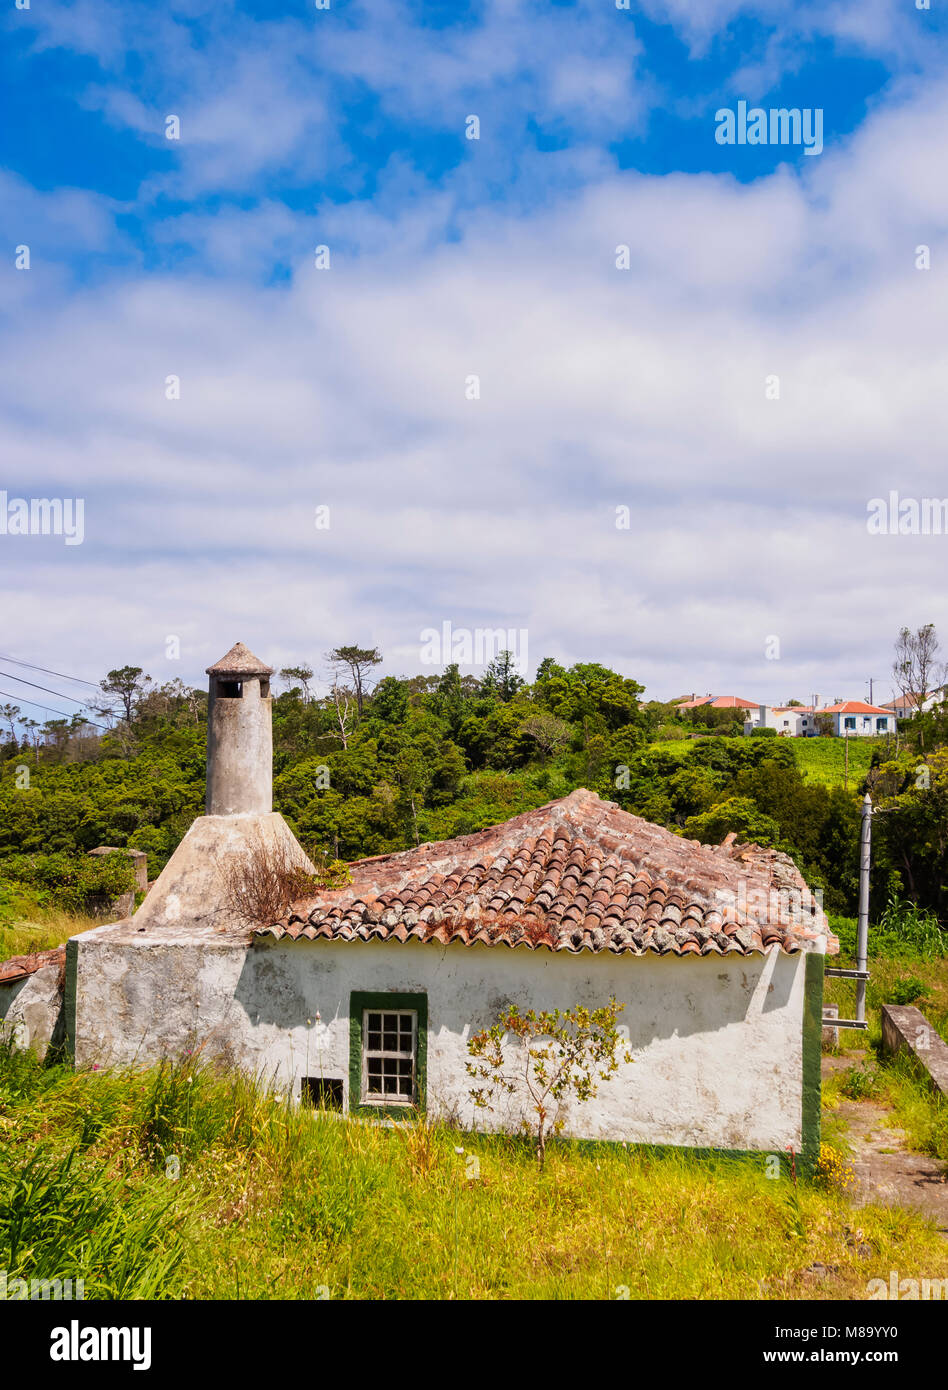 Maison traditionnelle, l'île de Santa Maria, Açores, Portugal Banque D'Images